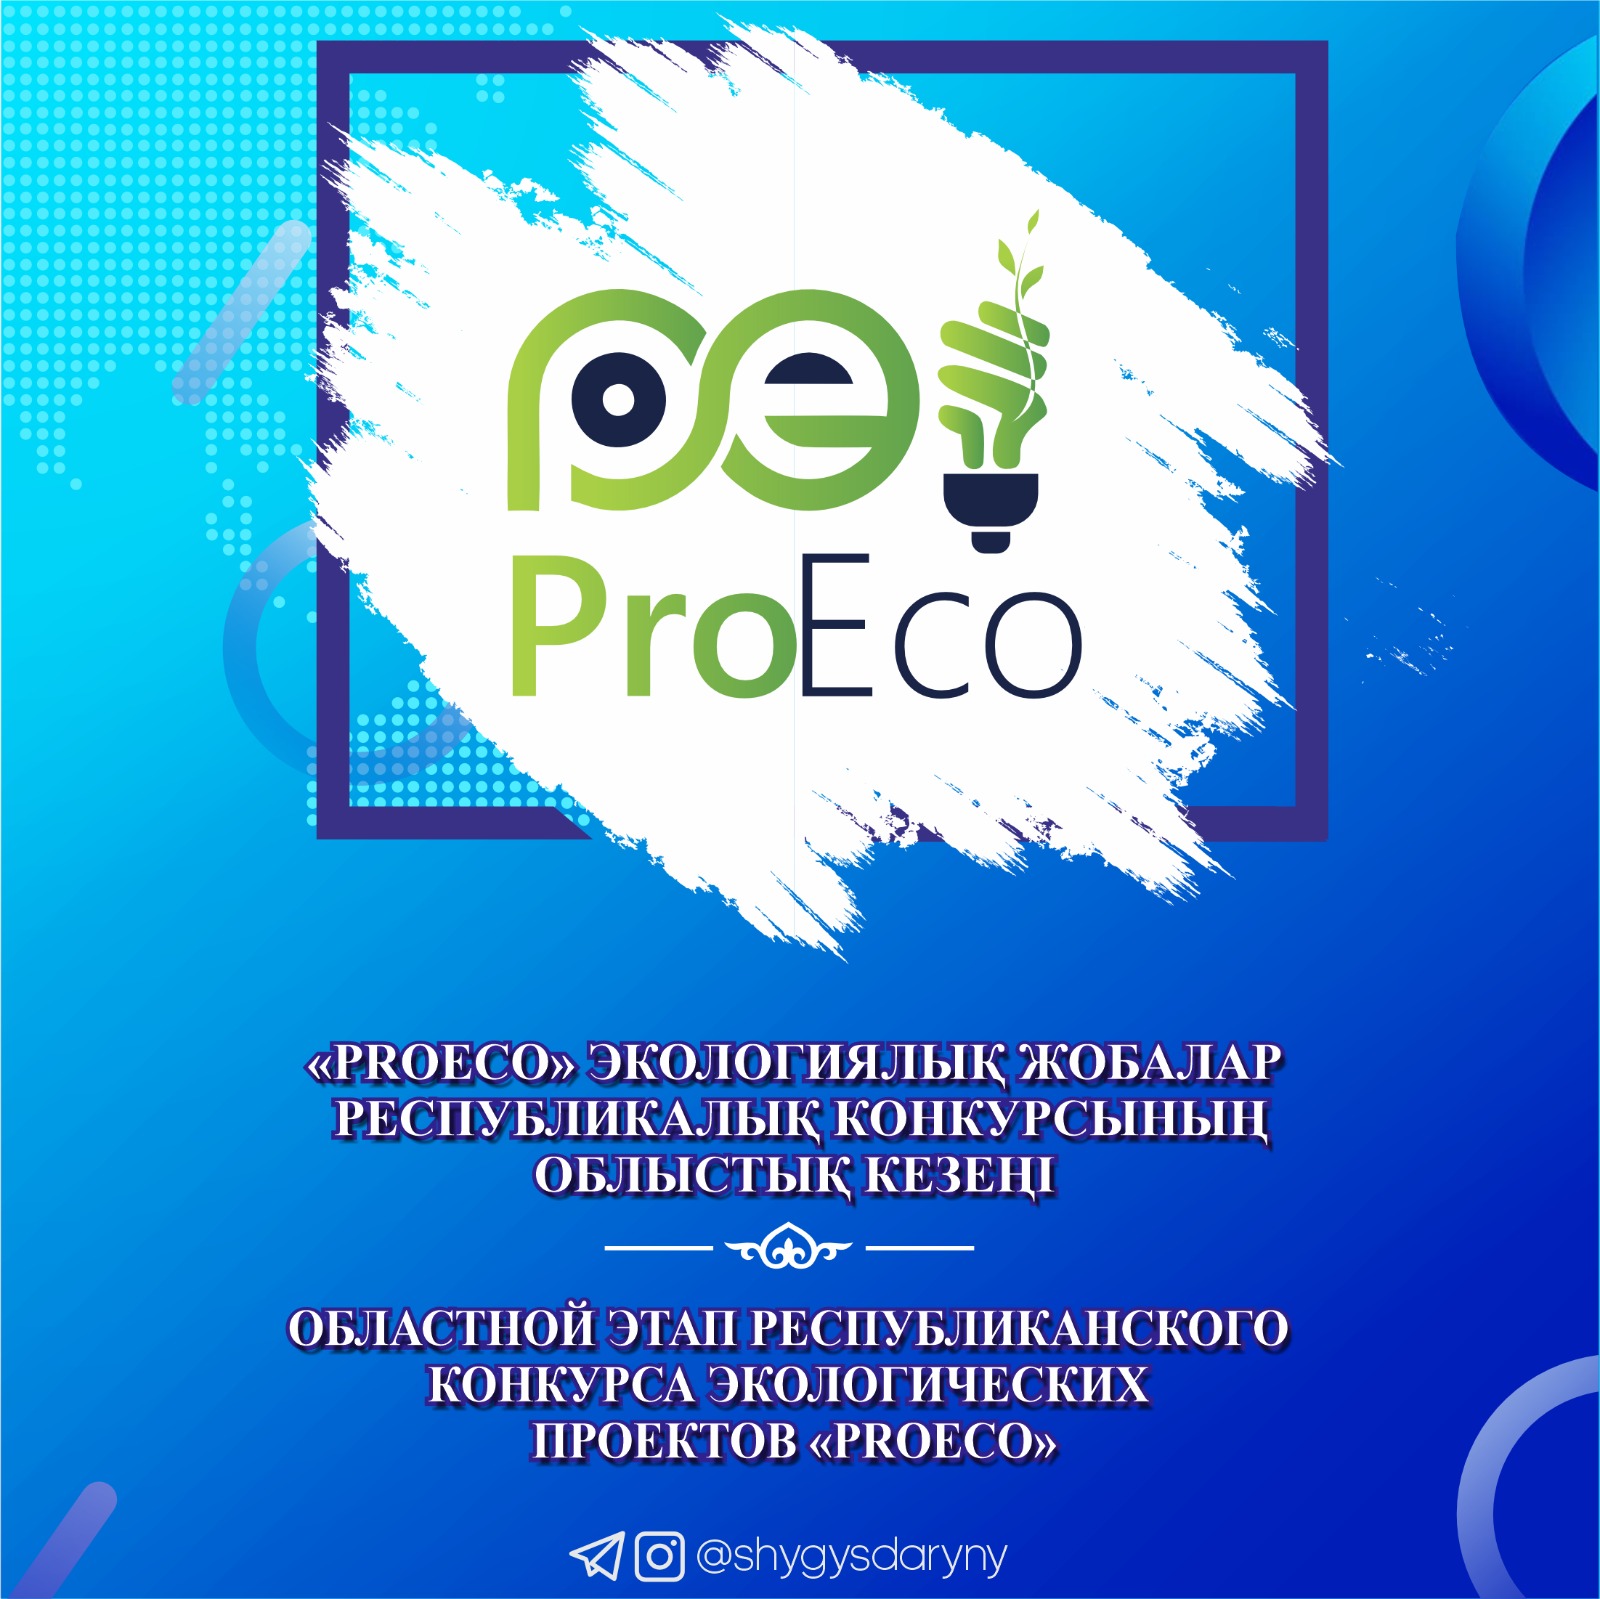 О проведении областного этапа республиканского конкурса экологических проектов «ProEco»среди учащихся 5-8 классов